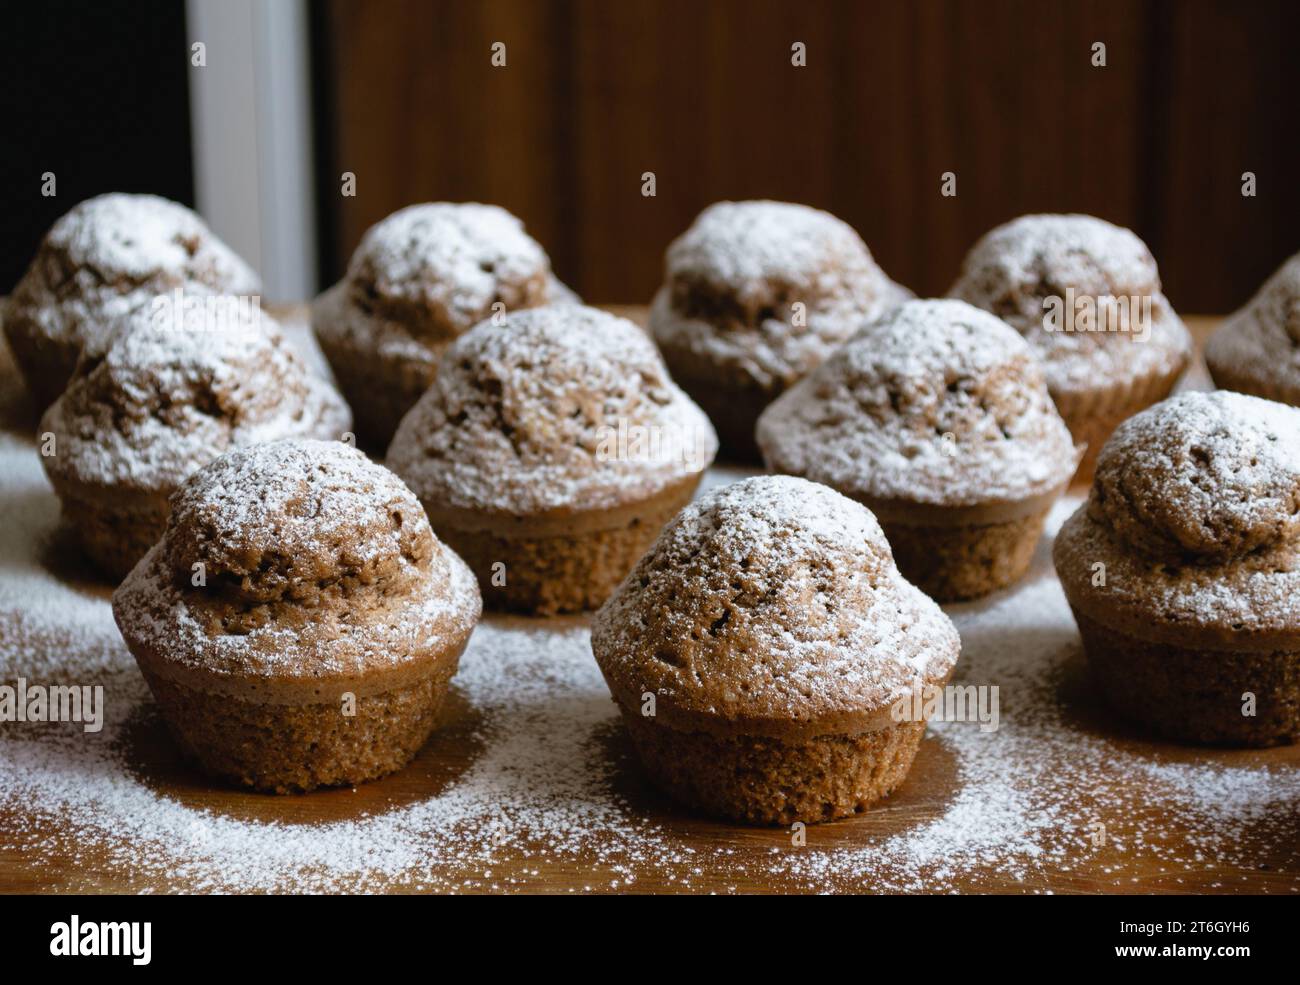 Primo piano di deliziosi cupcake al cioccolato al forno su una tavola di legno e cosparsi di zucchero bianco in polvere Foto Stock